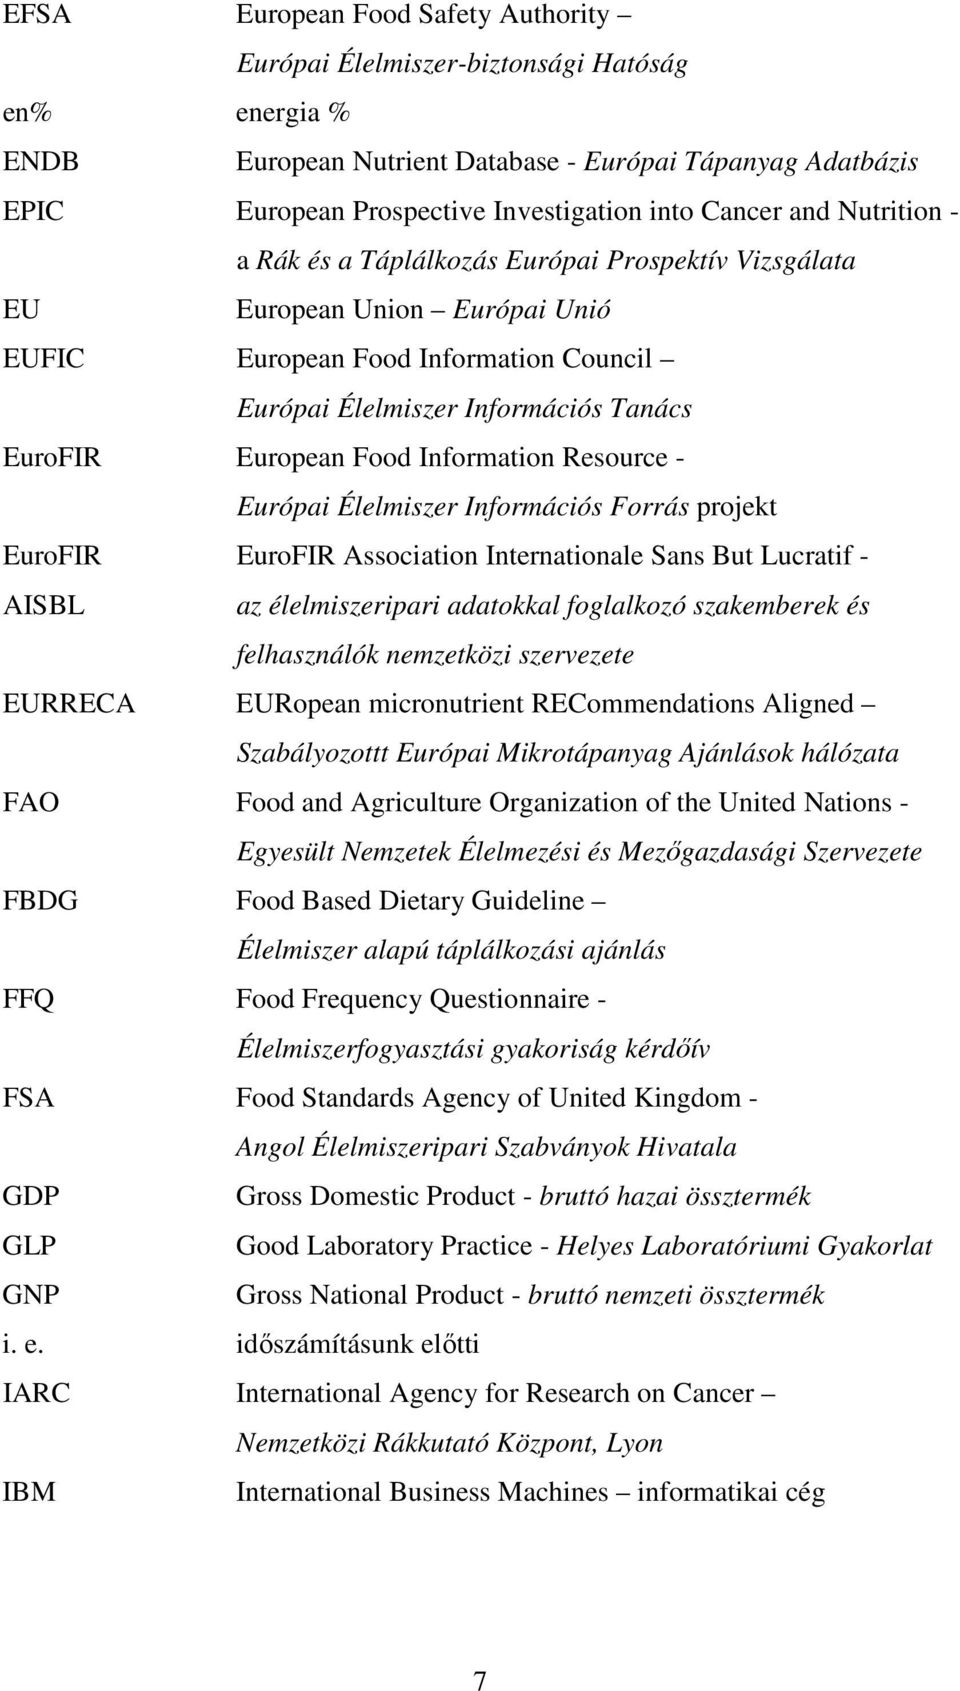 European Food Information Resource - Európai Élelmiszer Információs Forrás projekt EuroFIR AISBL EuroFIR Association Internationale Sans But Lucratif - az élelmiszeripari adatokkal foglalkozó